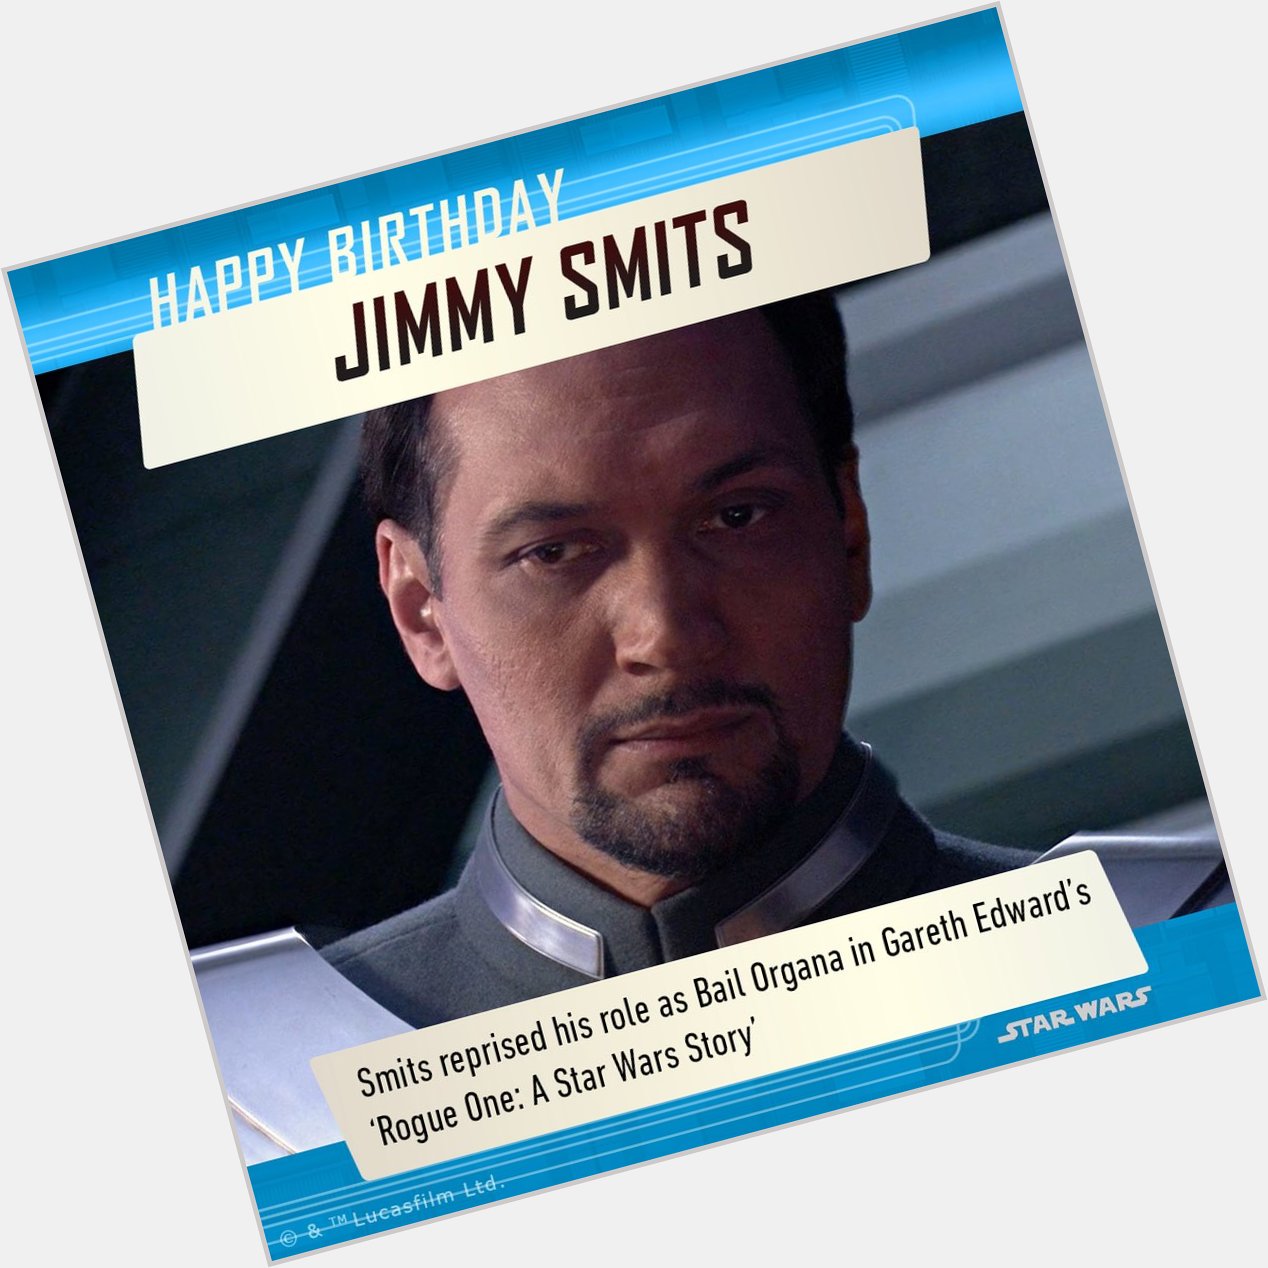 Happy Birthday Jimmy Smits!  